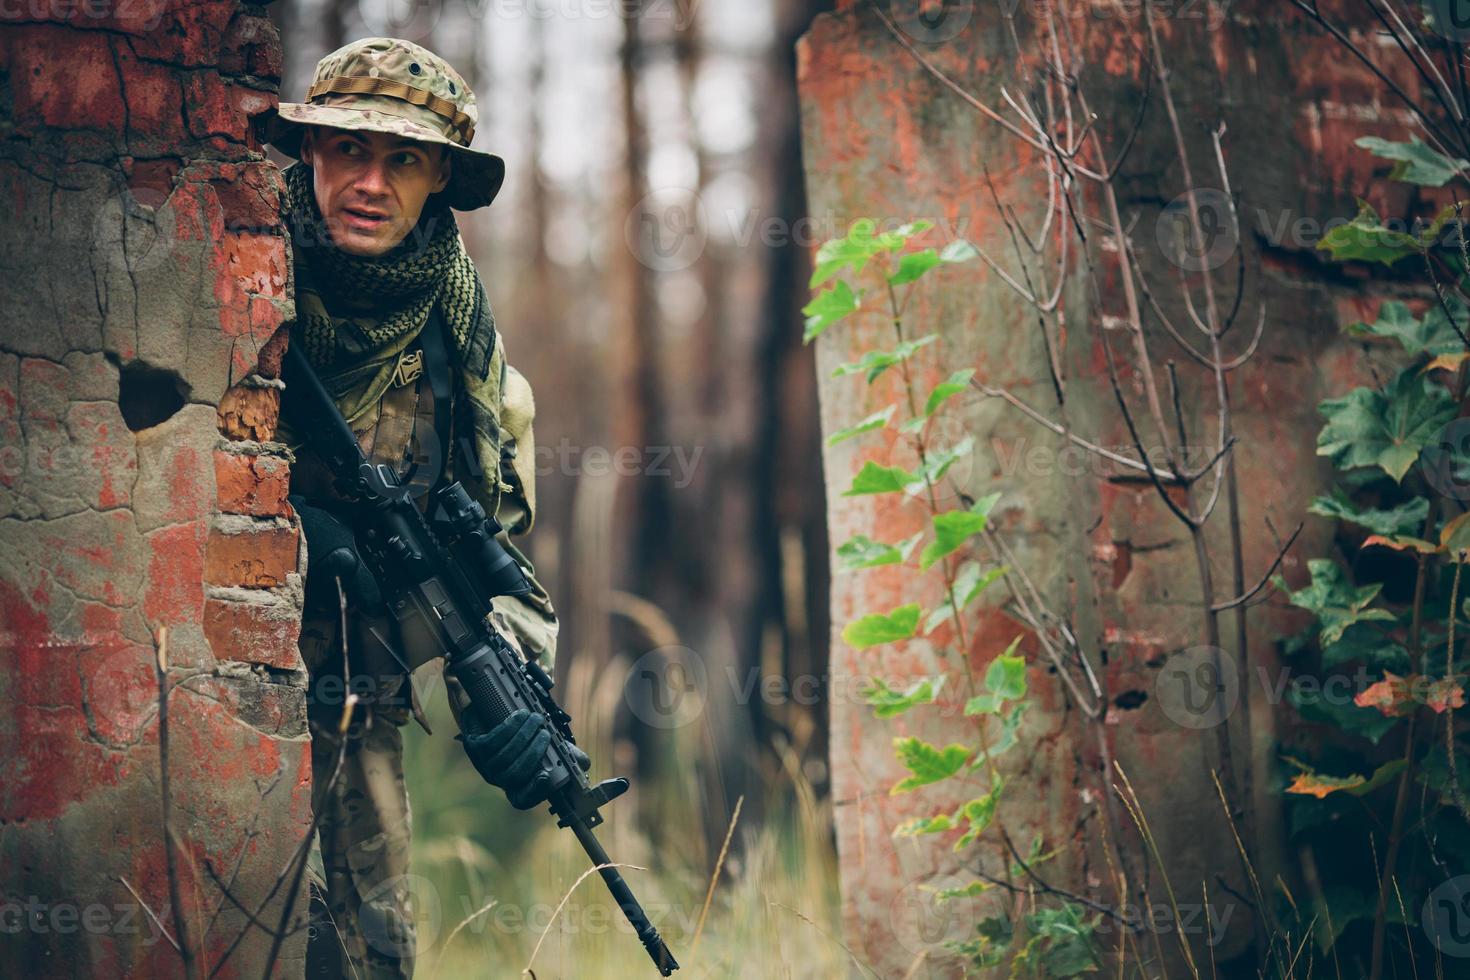 soldat avec fusil dans la forêt photo